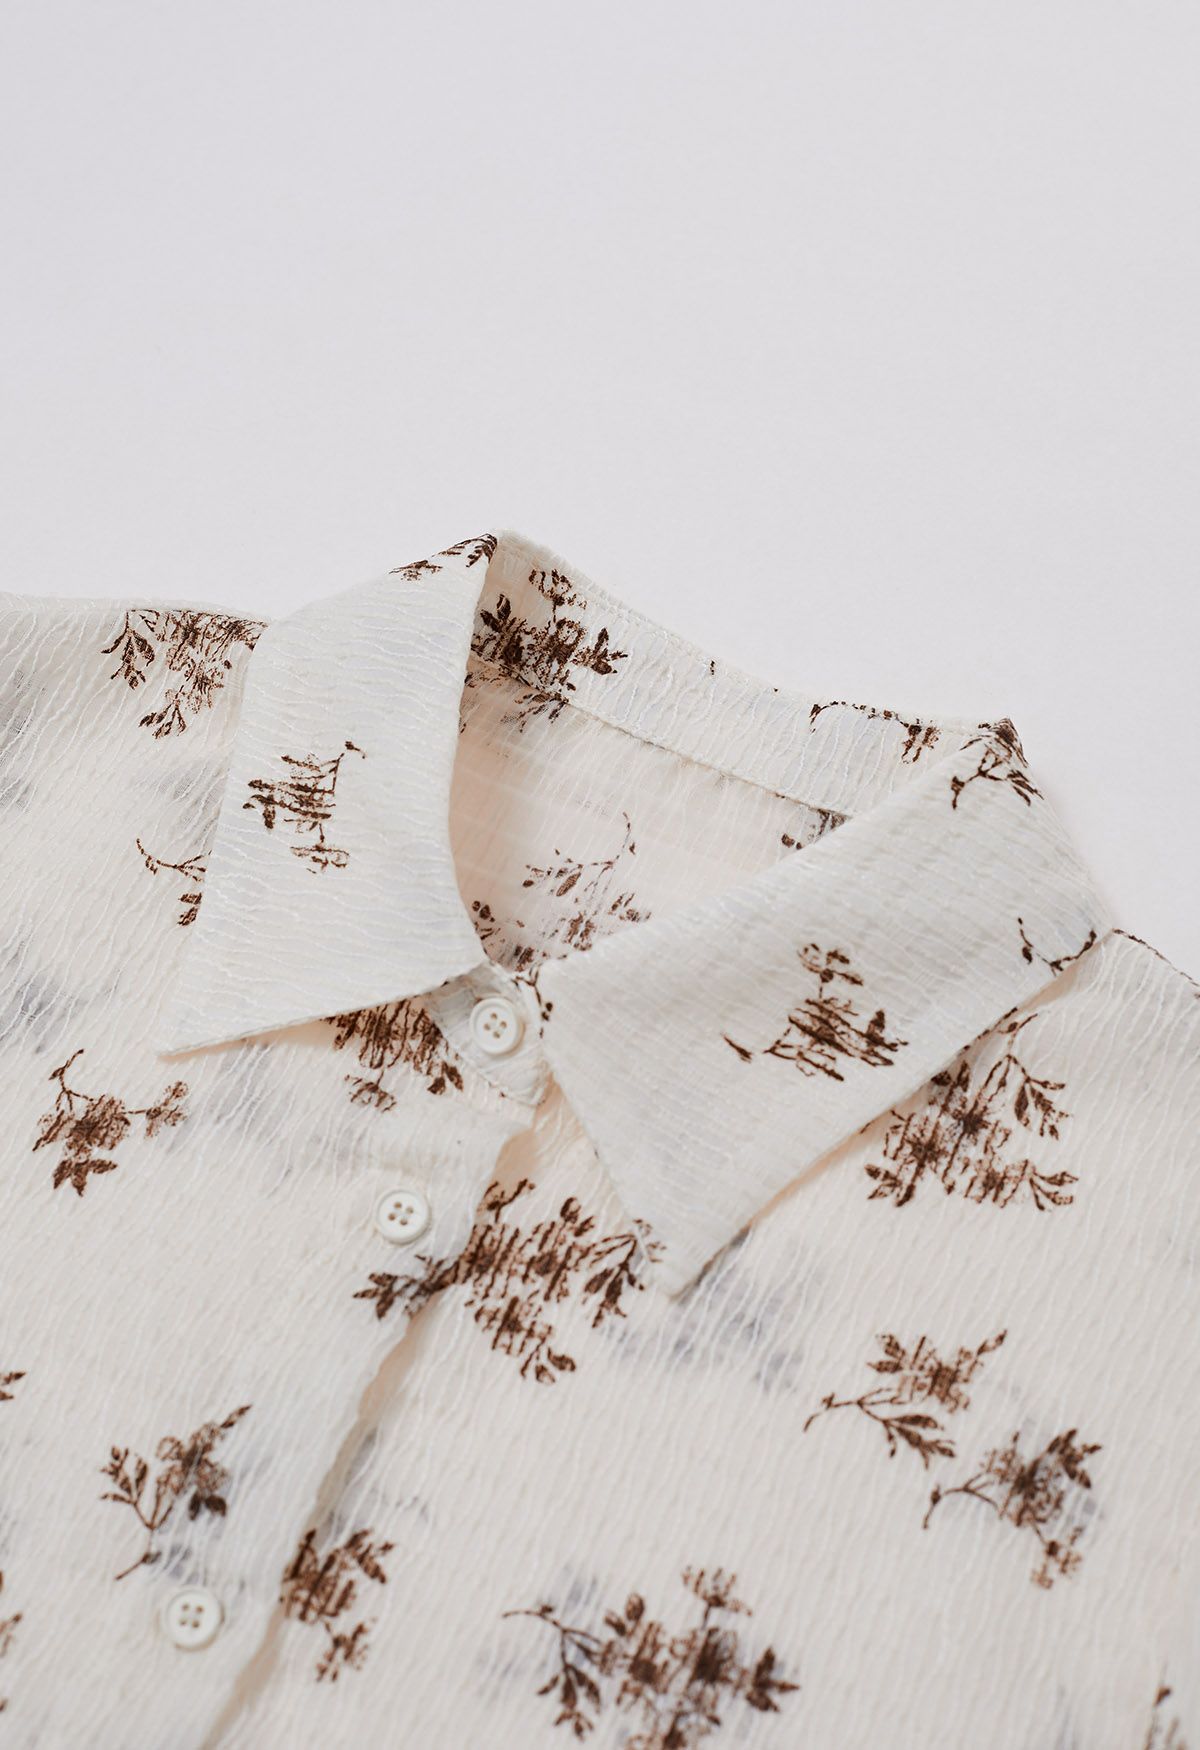 Chemise boutonnée texturée à imprimé fleuri en crème